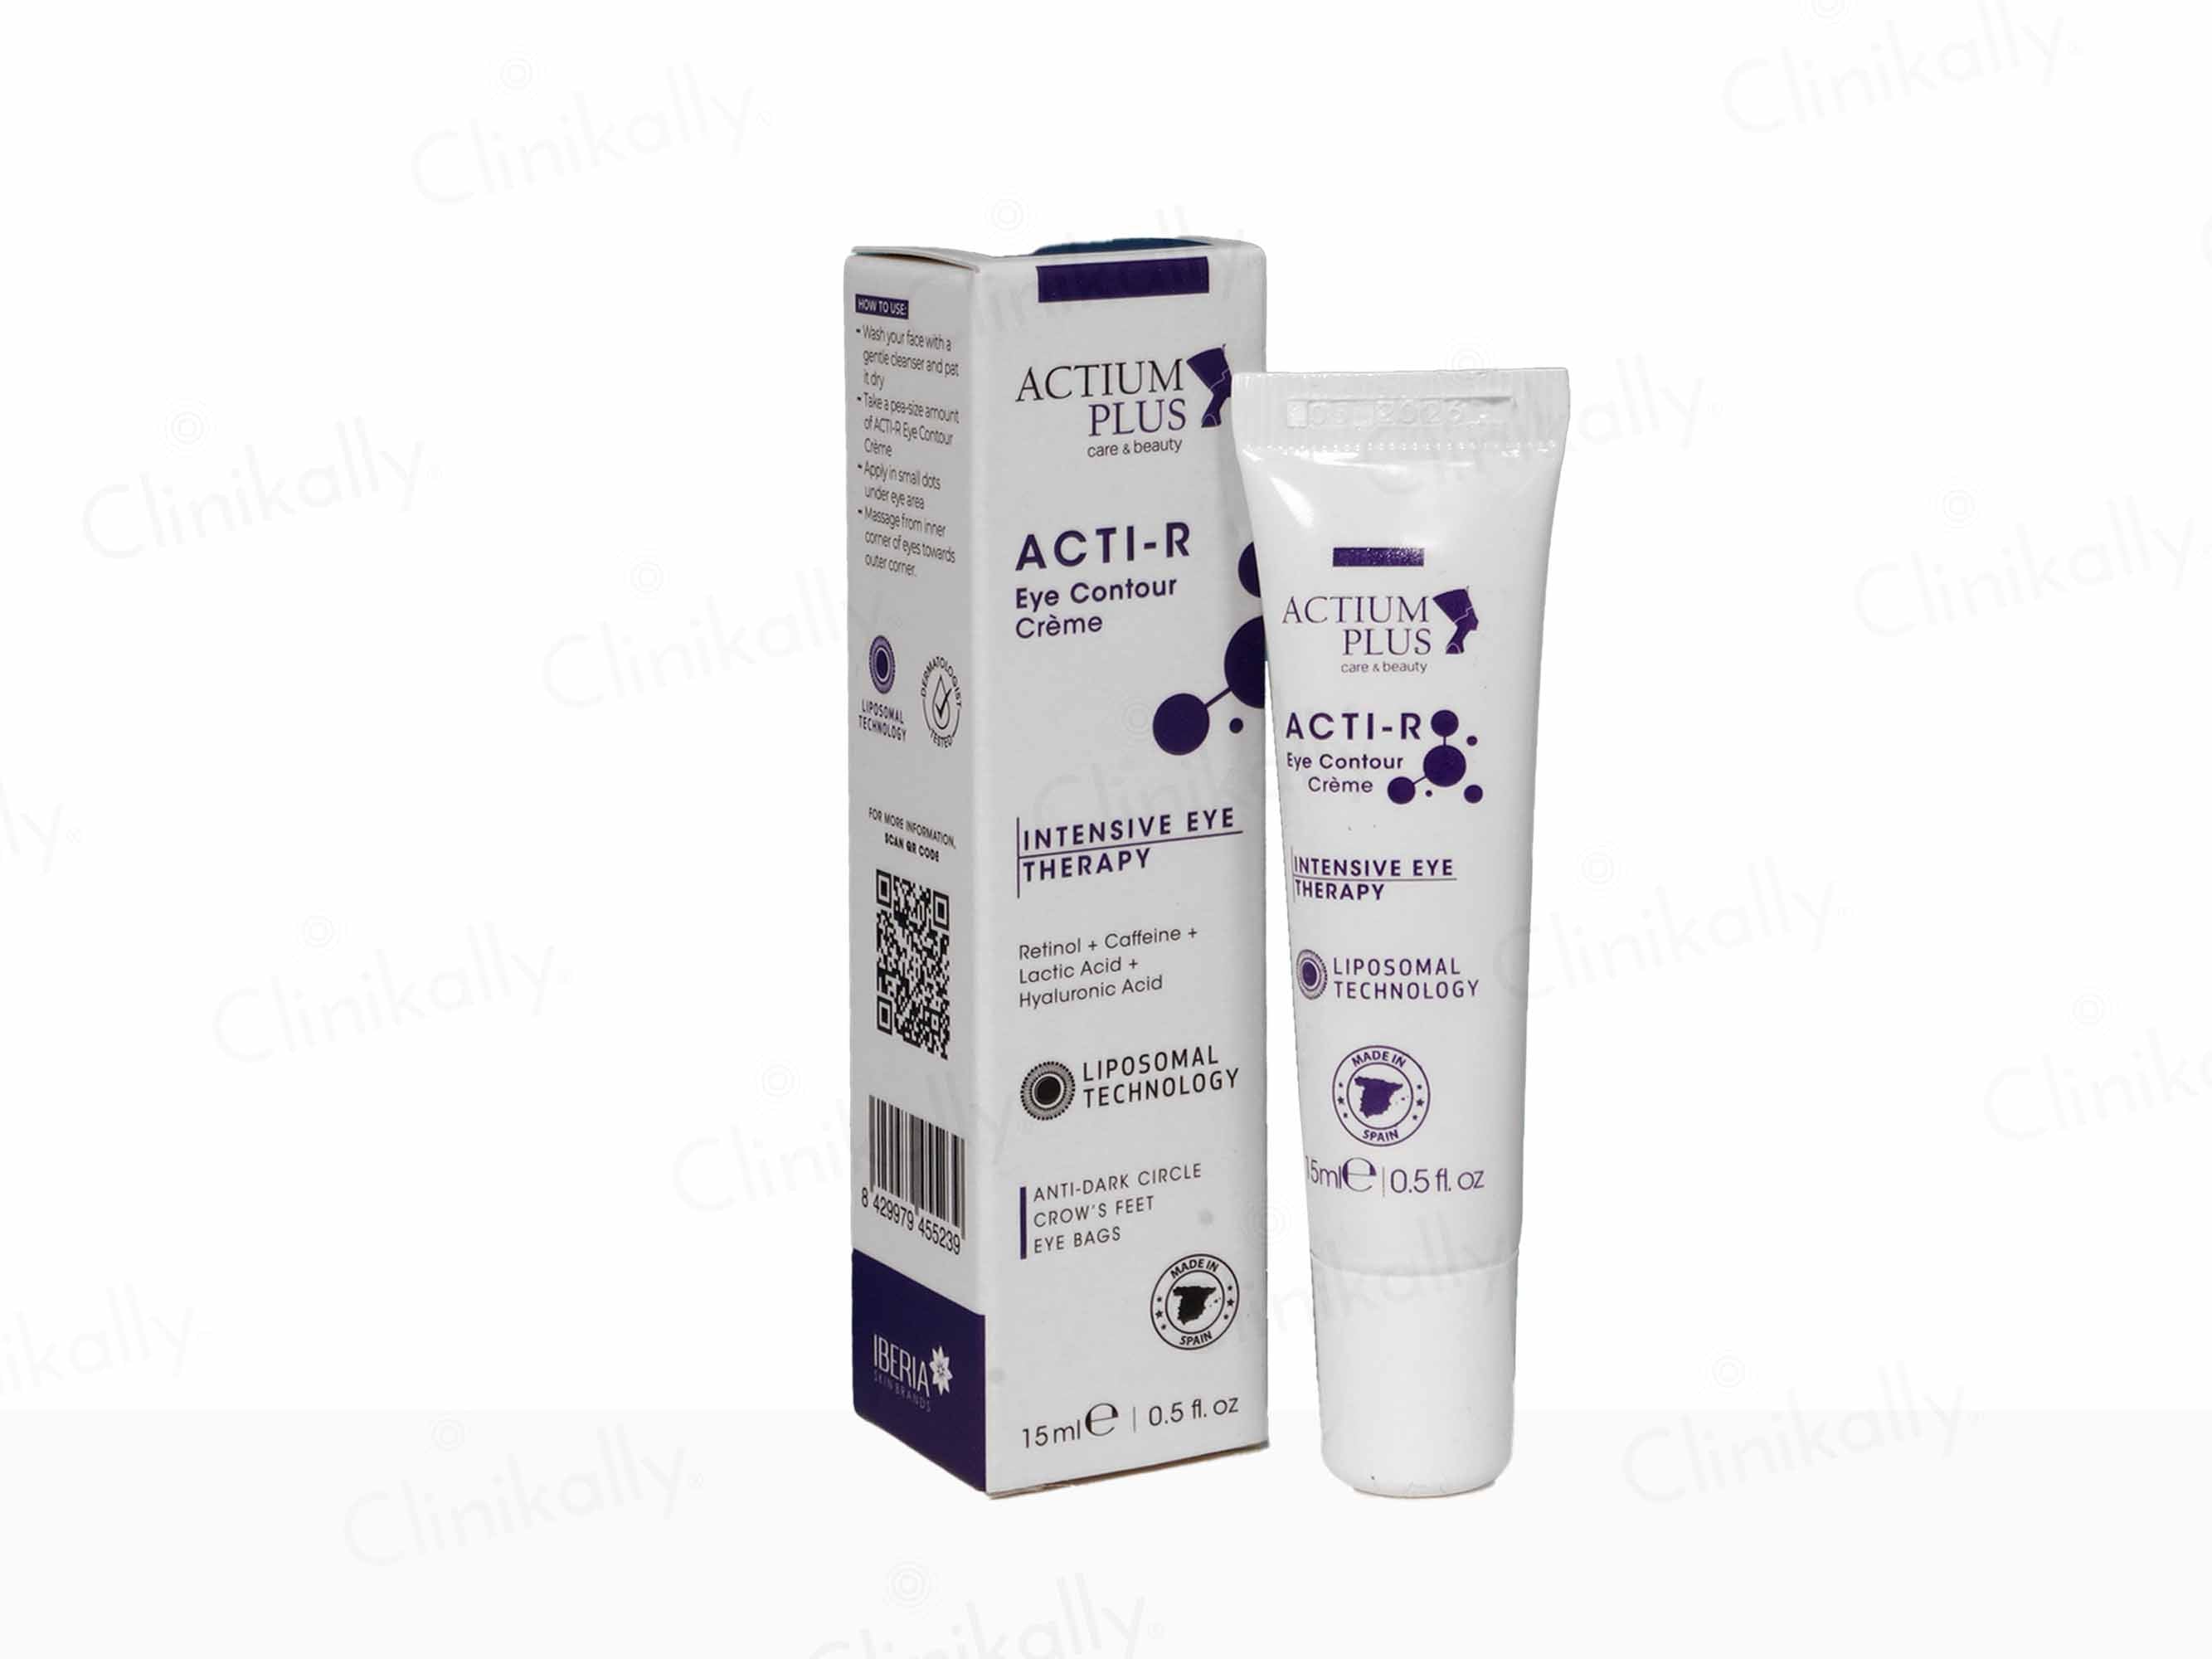 Actium Plus Acti-R Eye Contour Cream